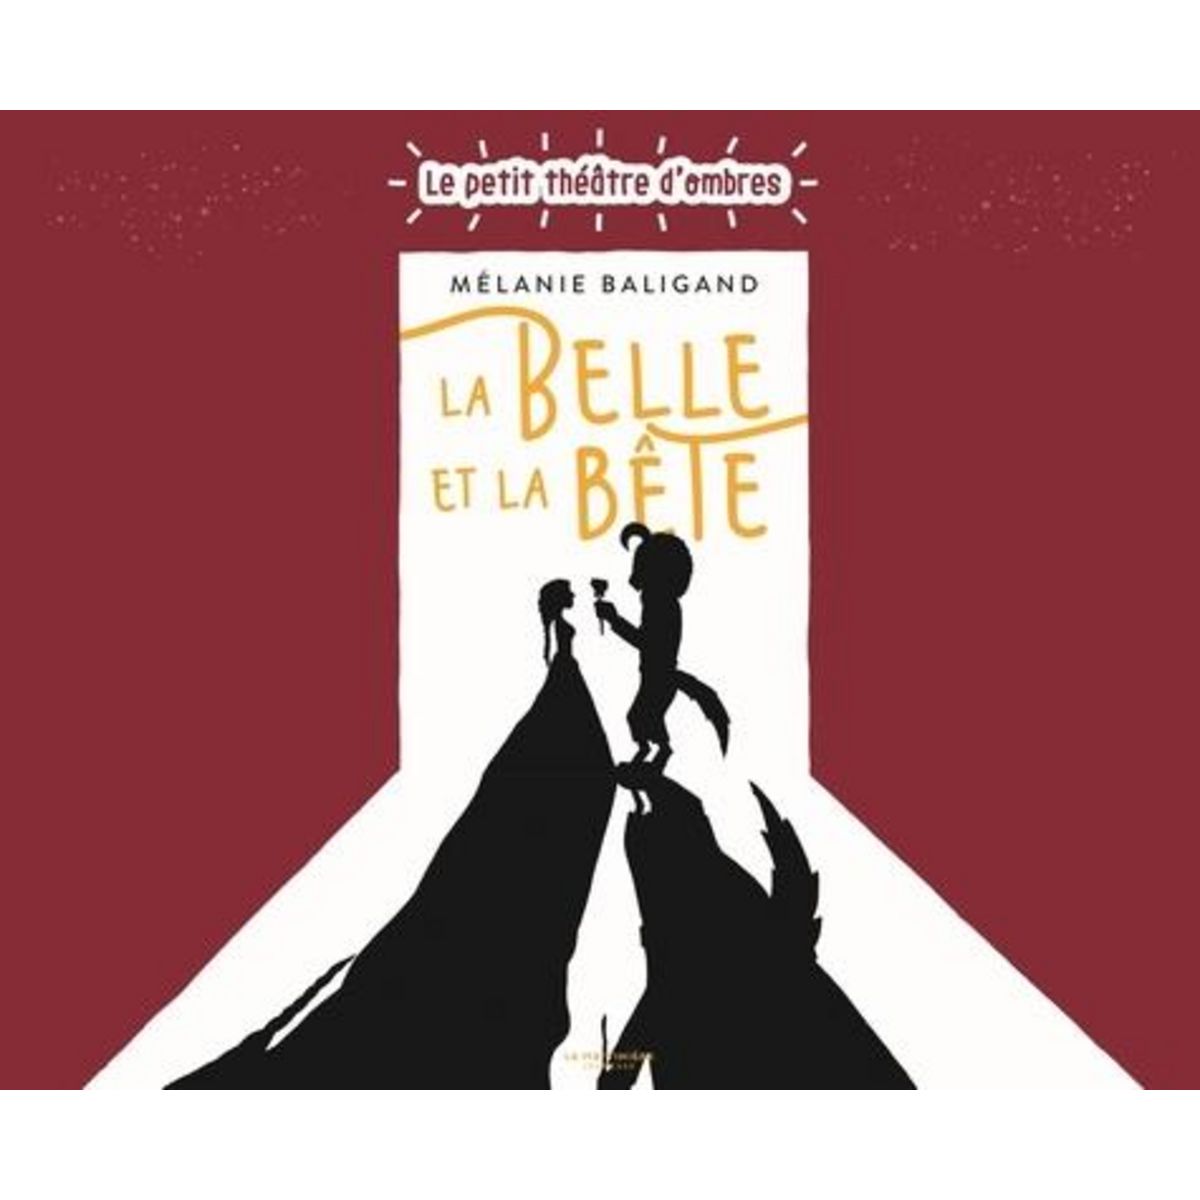 La Belle et la Bête de Disney - Album - Livre - Decitre